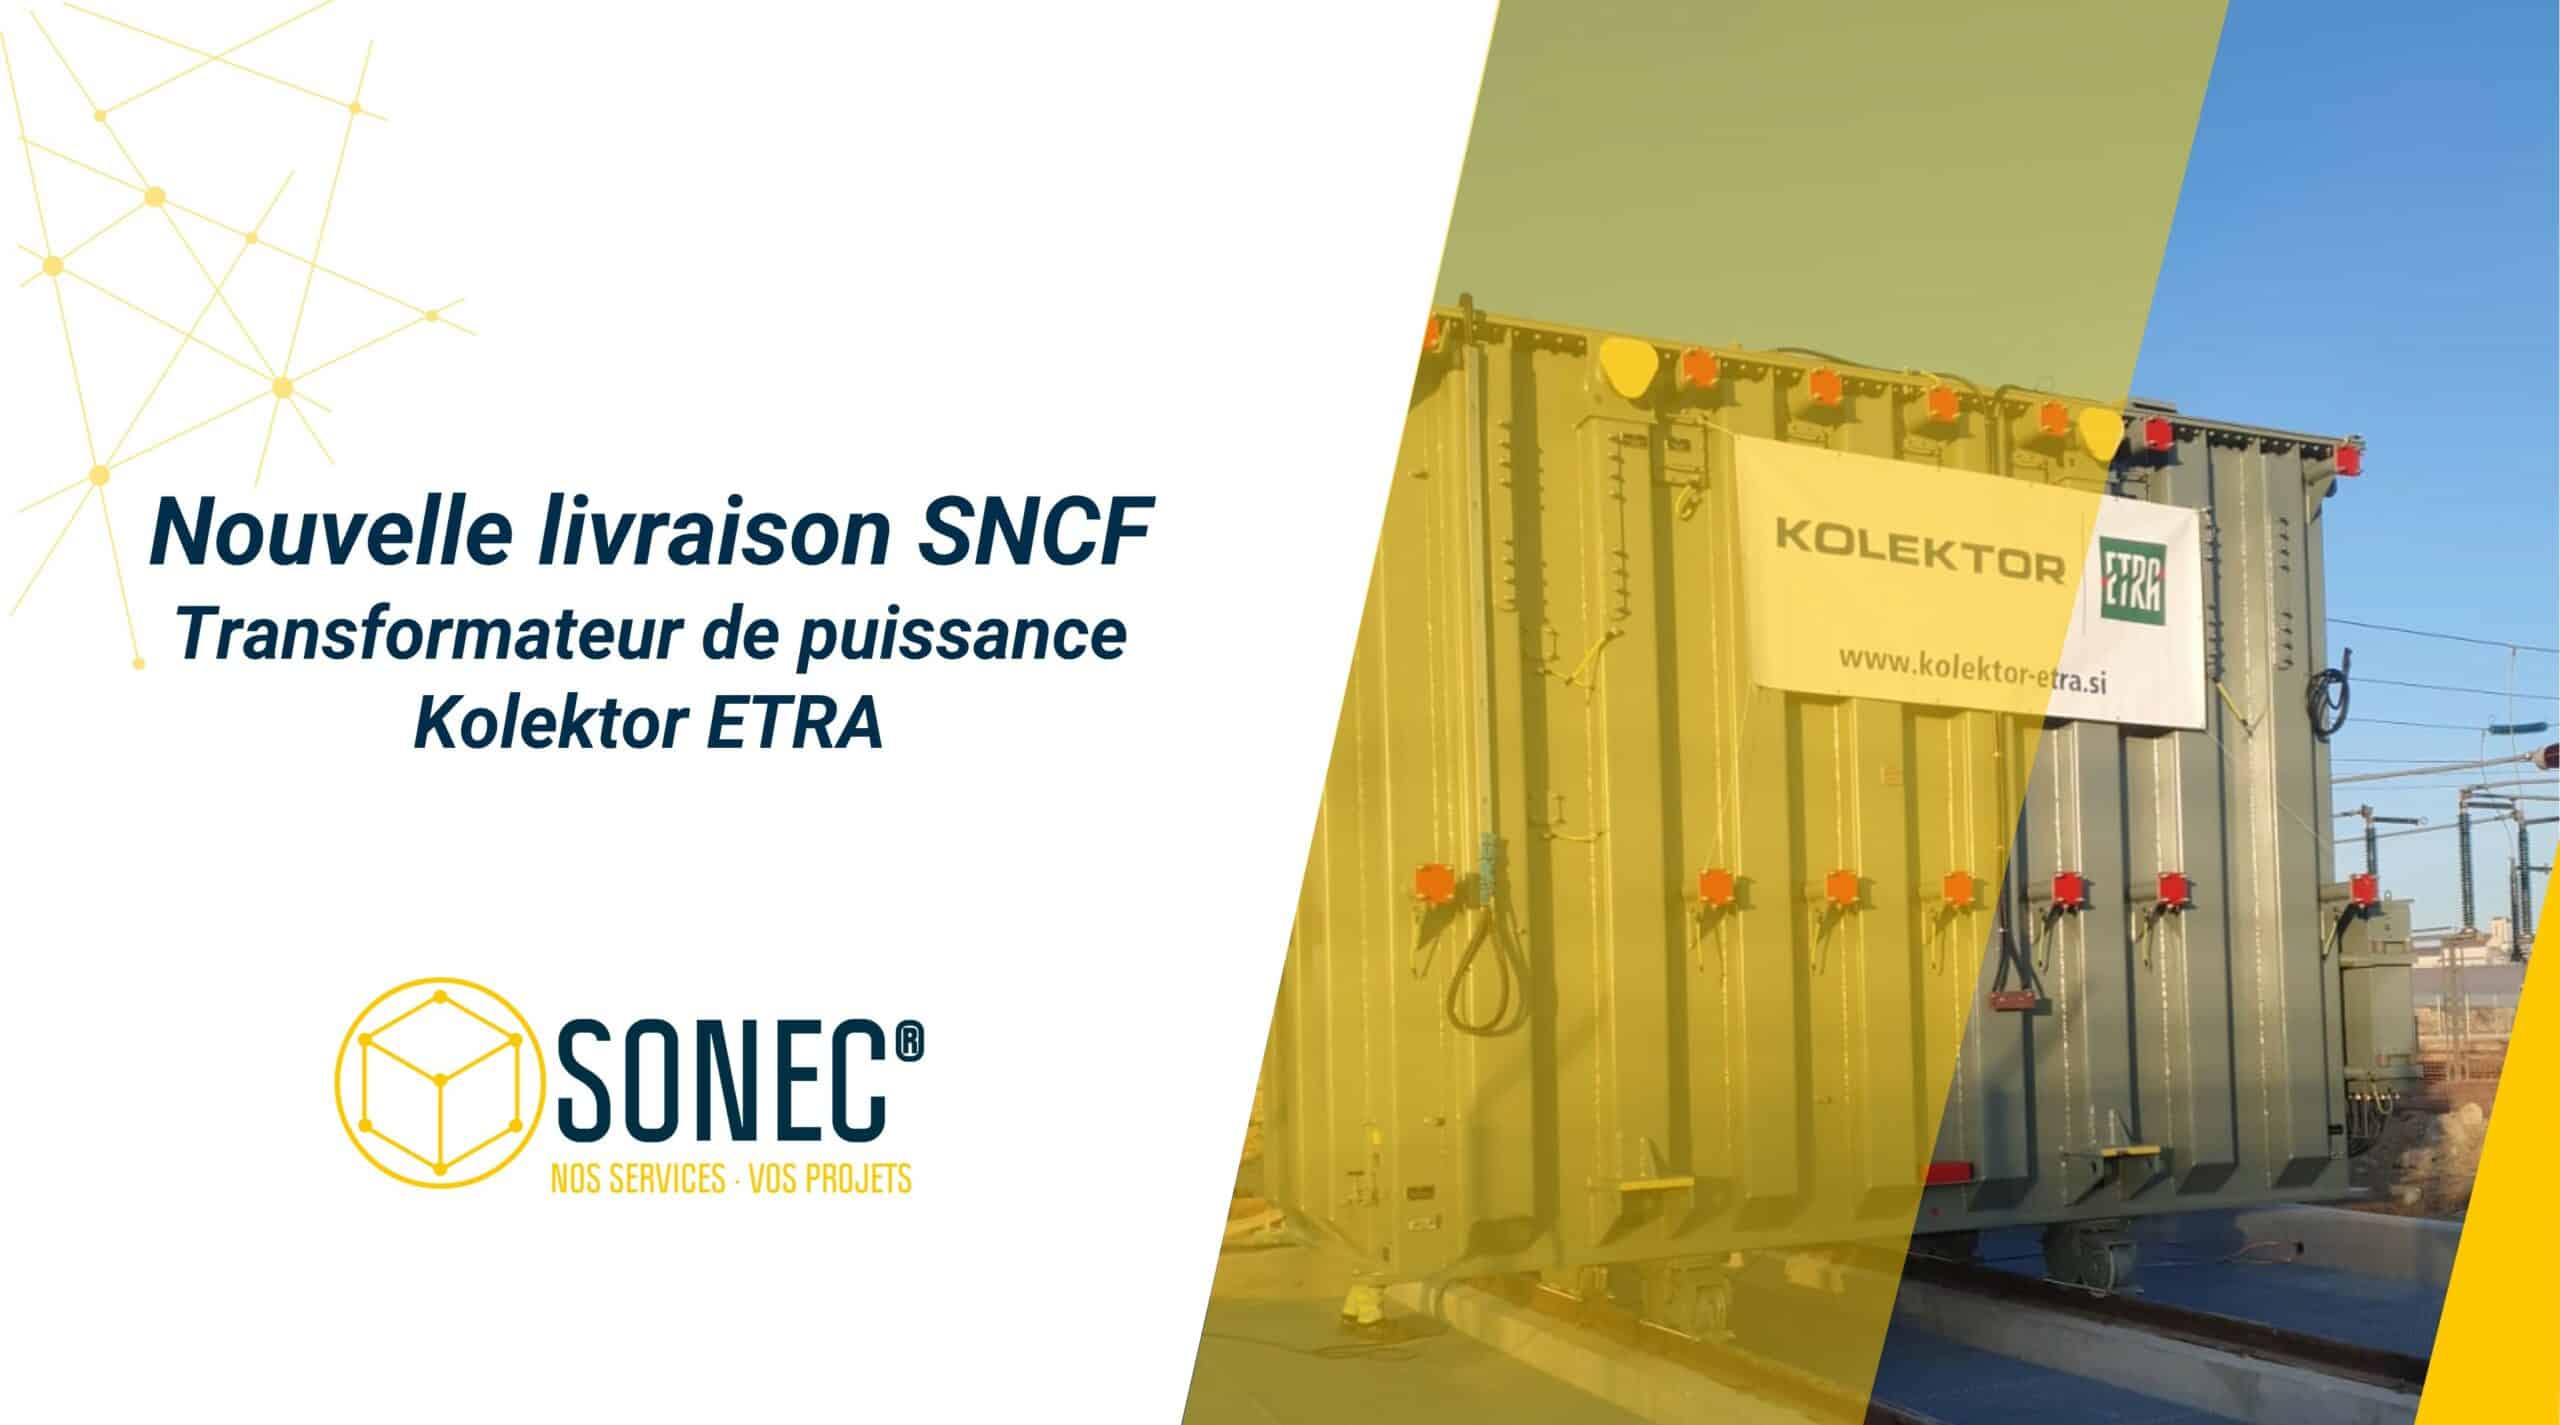 Sonec per SNCF: consegna di un trasformatore di potenza Kolektor ETRA